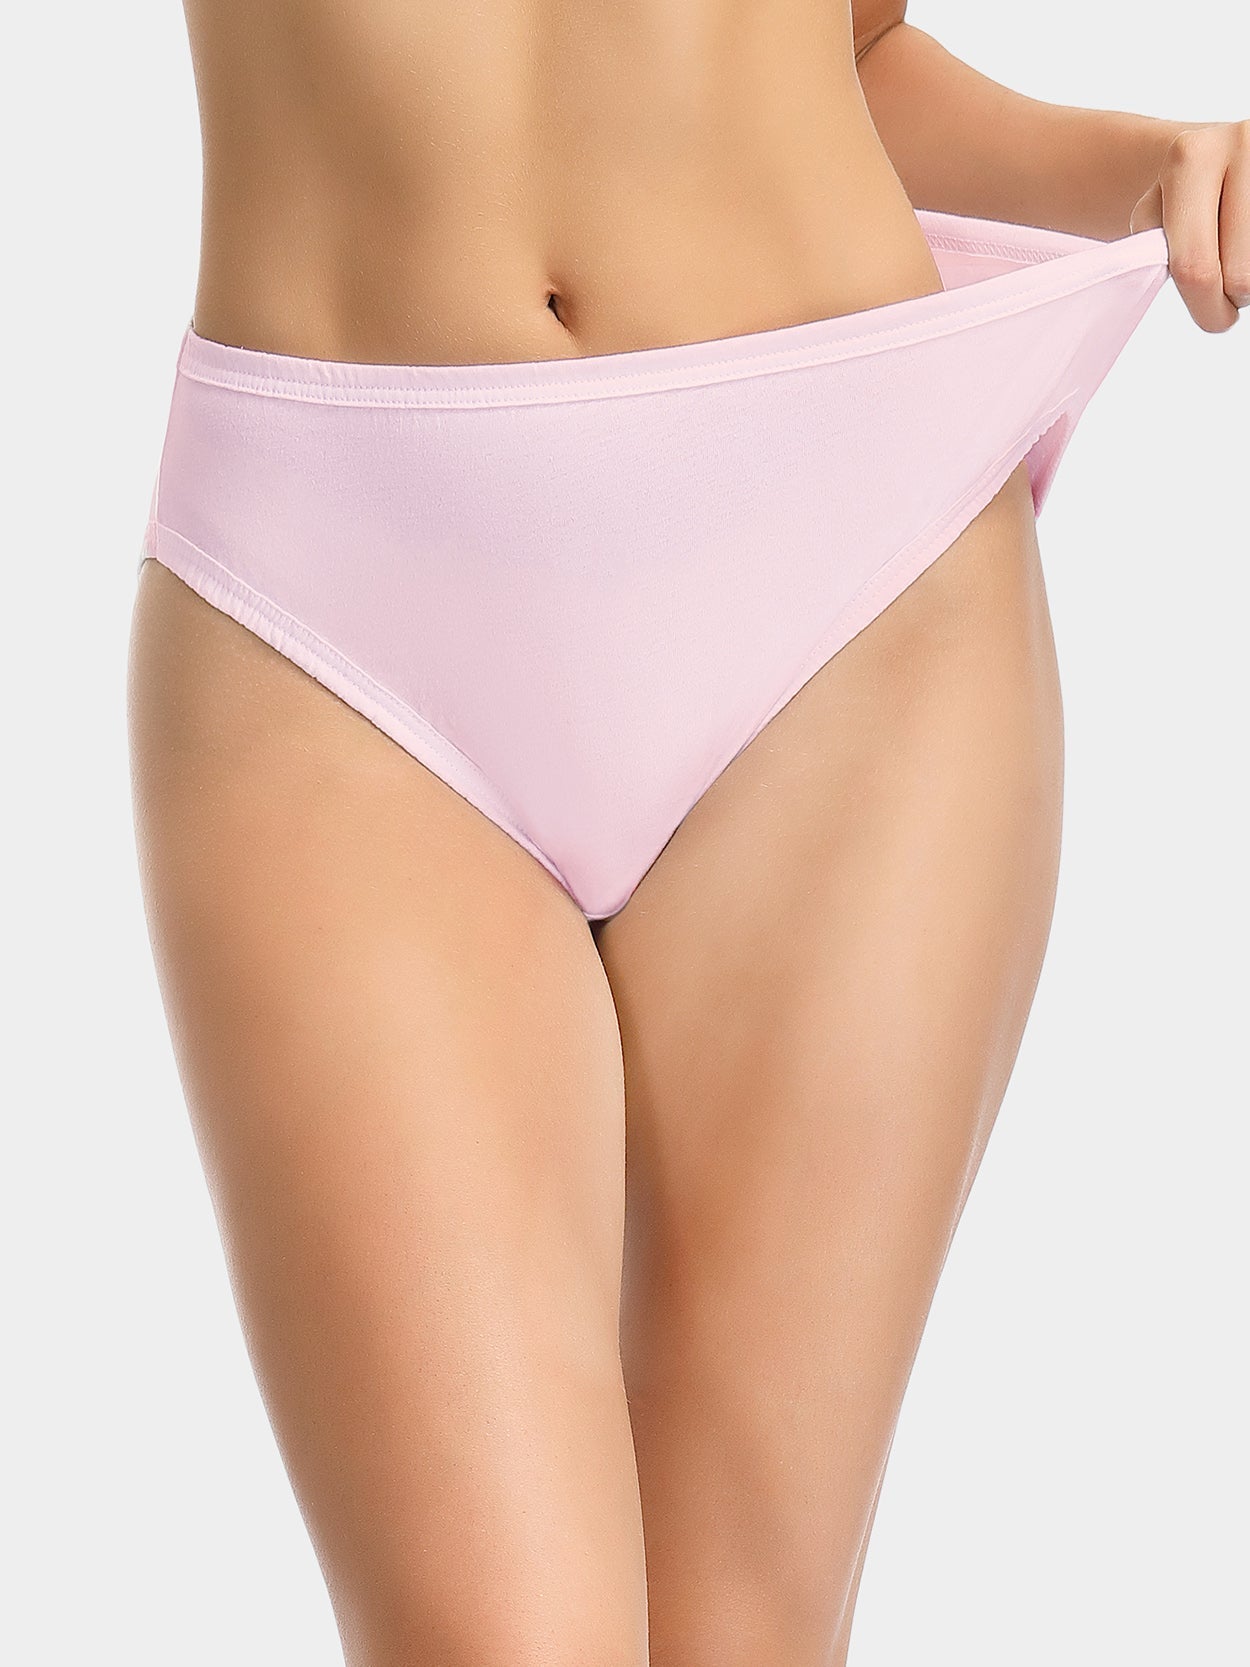 High-Cut Brief Cotton Plus Size Underwear 3 PCS Pink